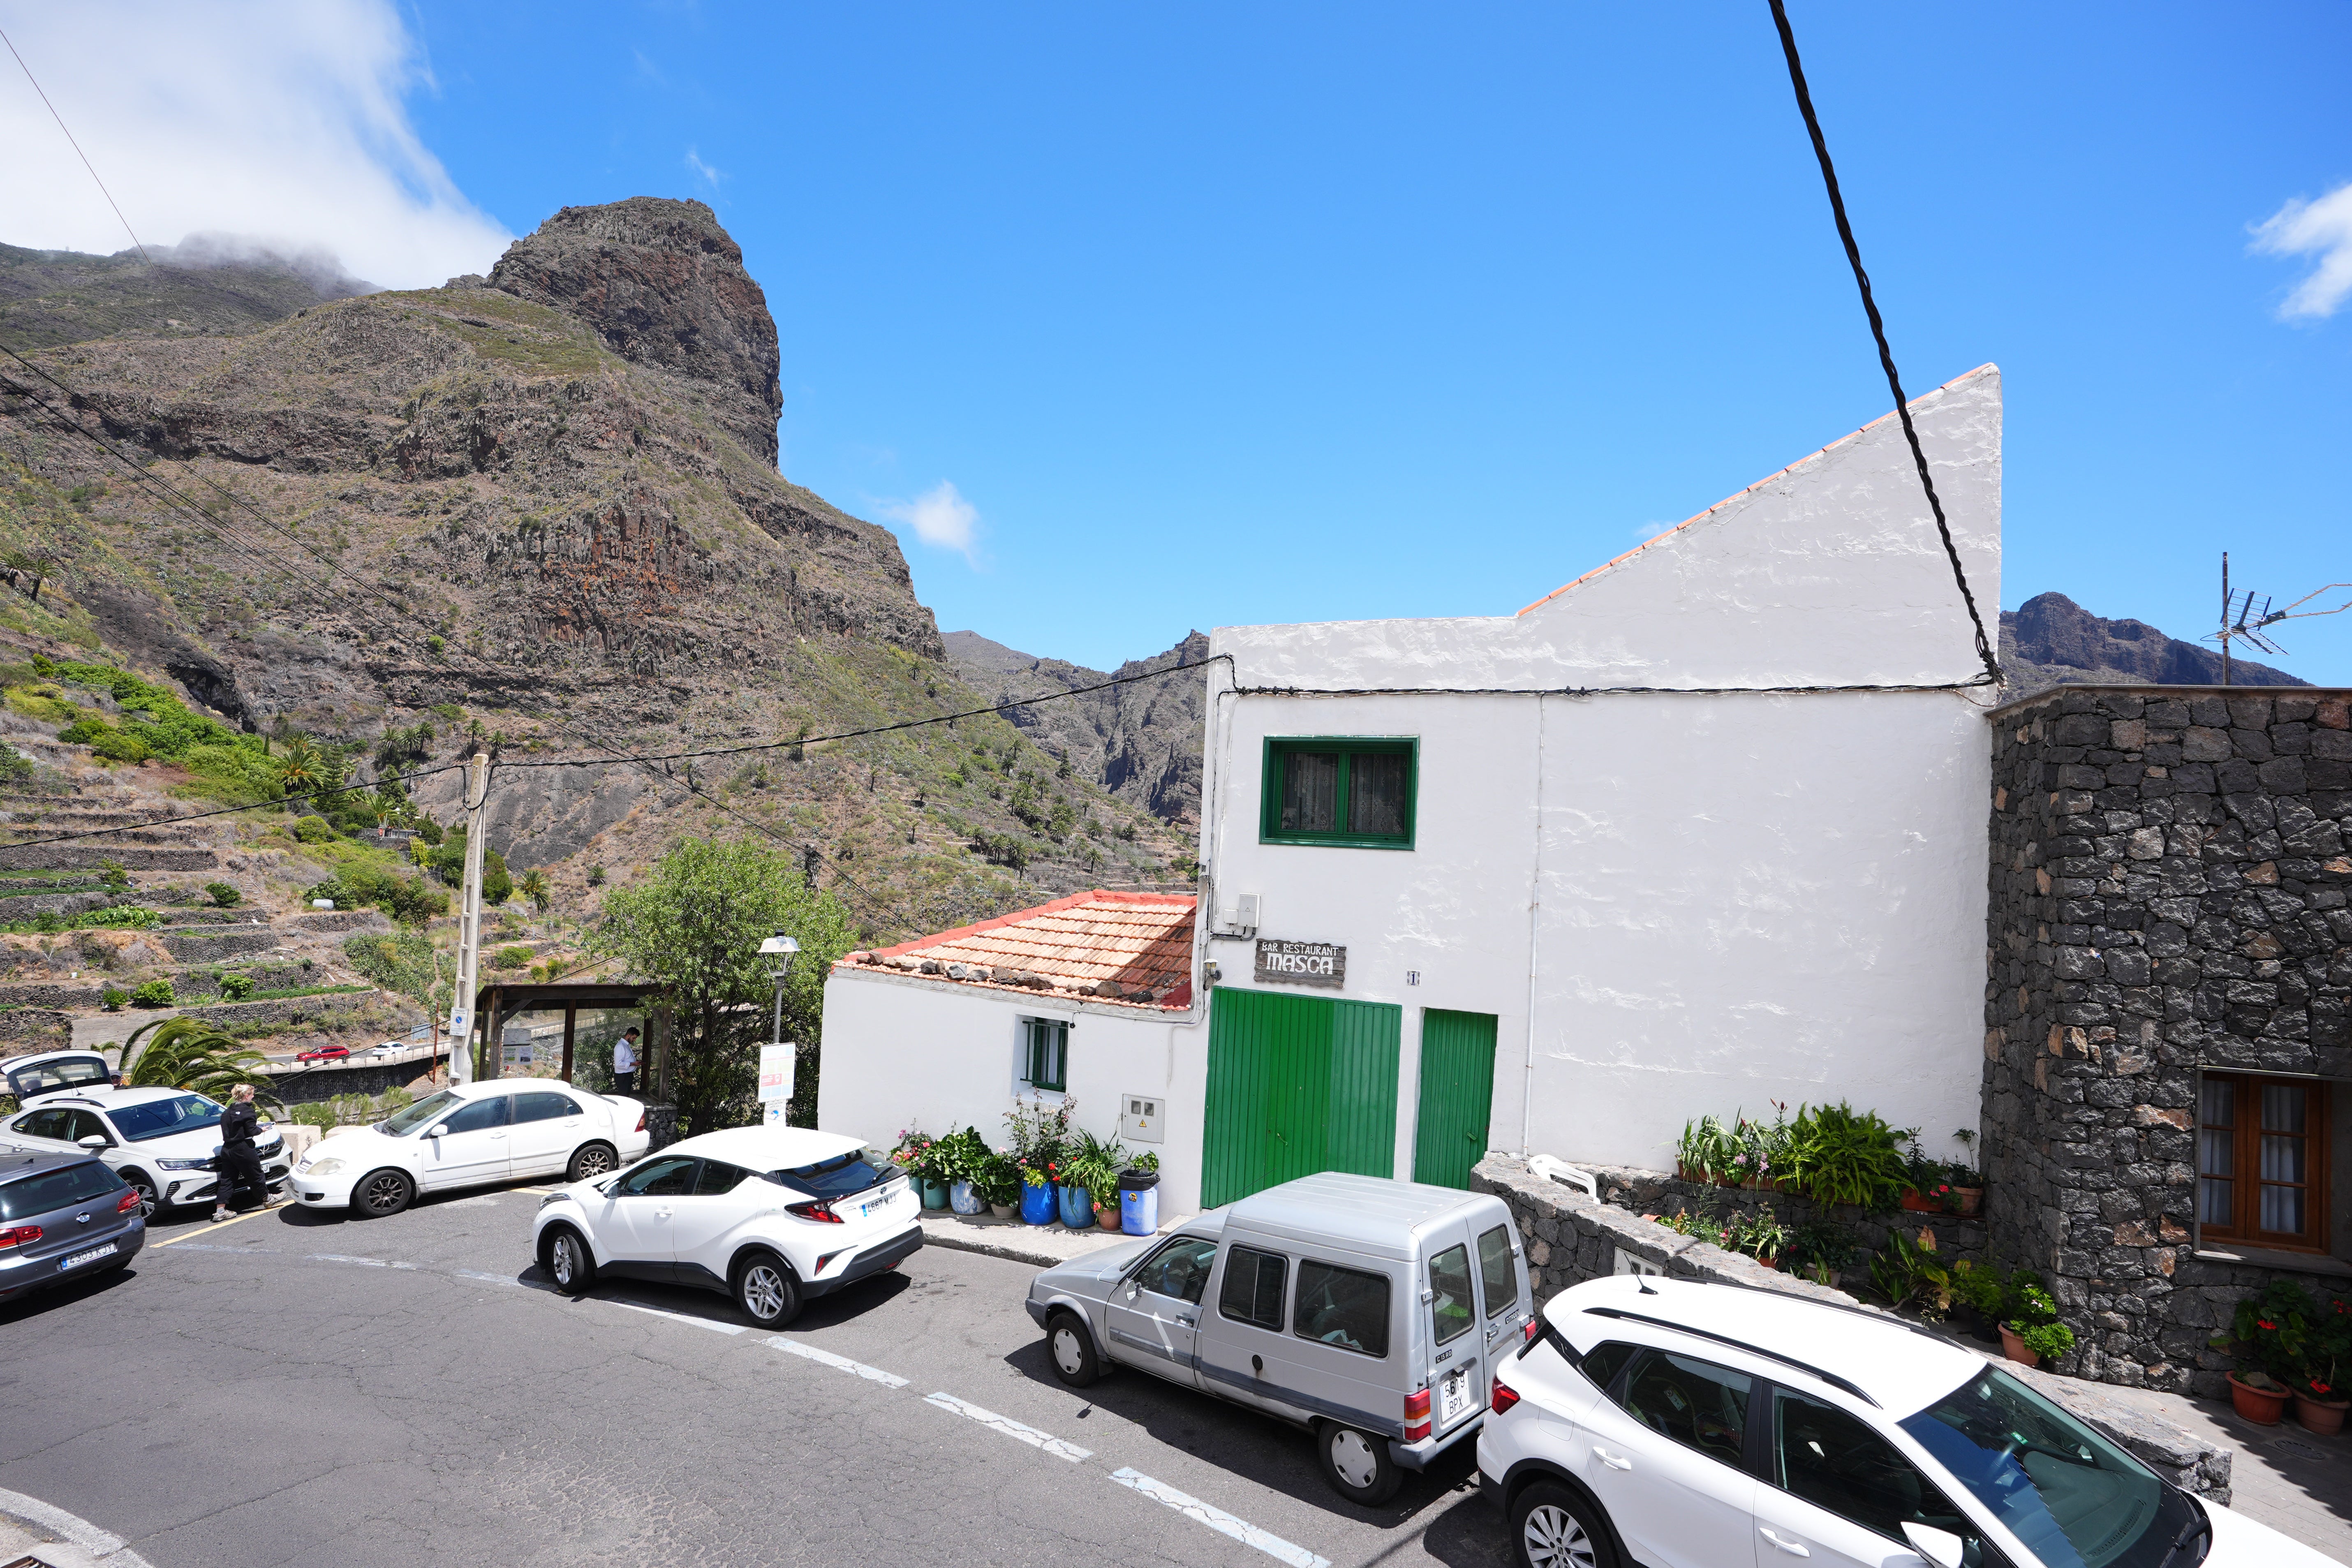 Airbnb Casa Abuela Tina en Masca, Tenerife, donde vivía el adolescente británico desaparecido Jay Slater antes de su desaparición (James Manning/PA).